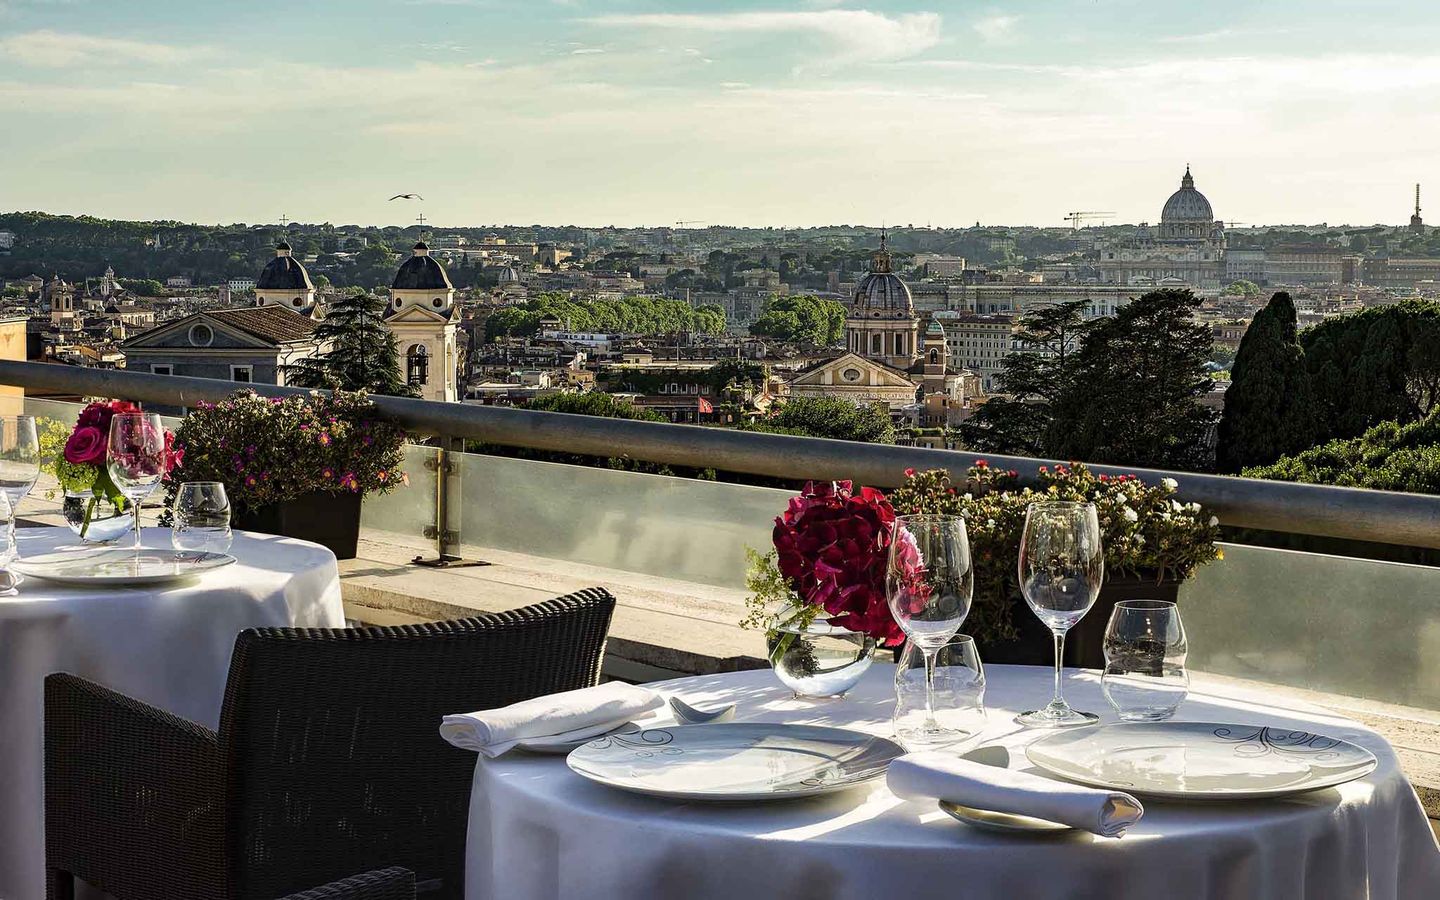 8 Best Italian Restaurants in Rome - Cookly